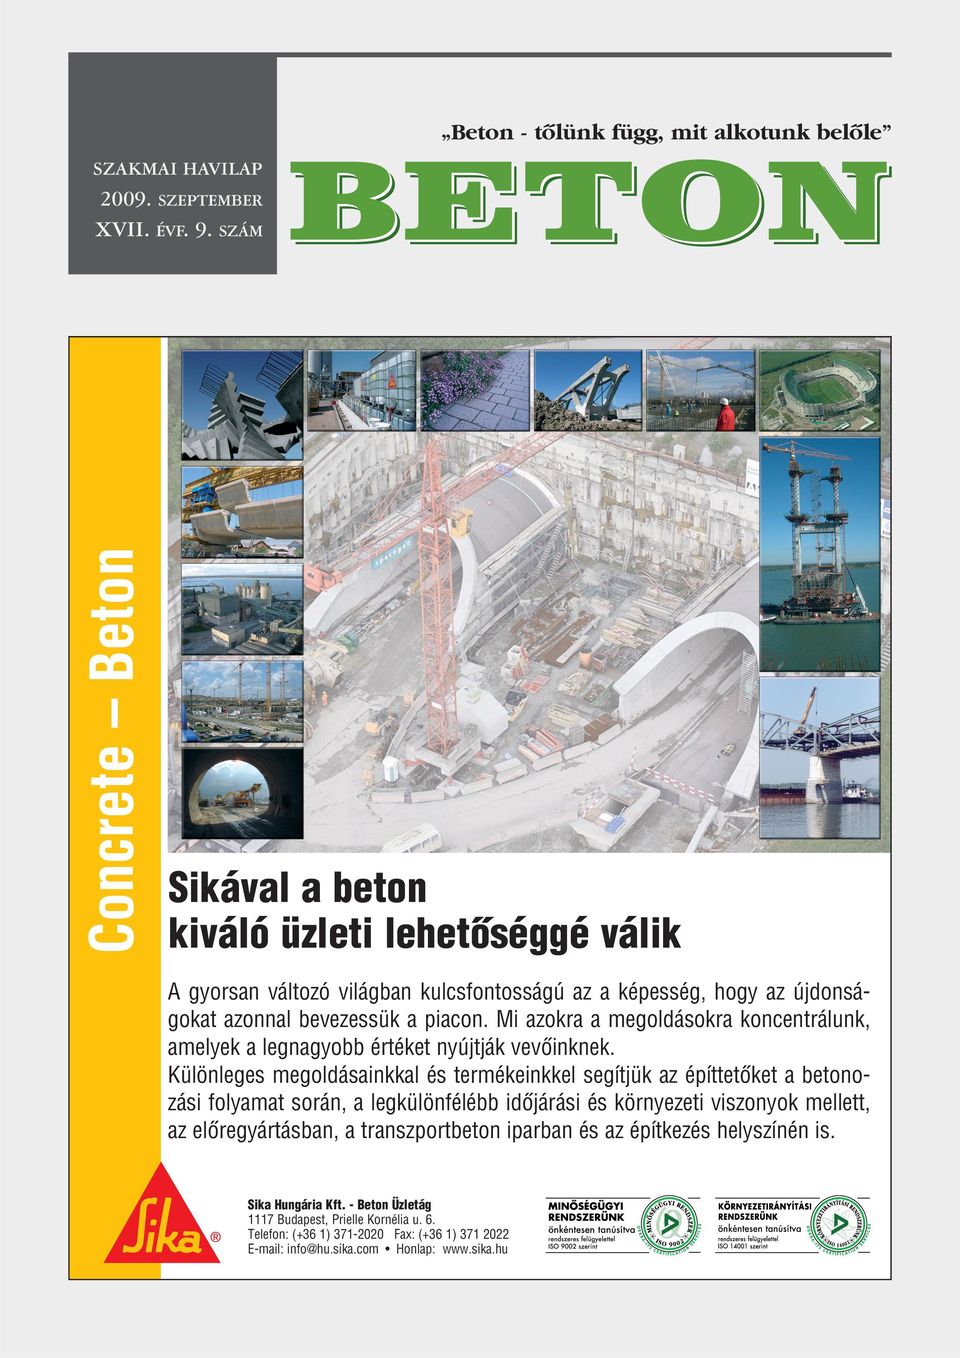 BETON. Concrete Beton. Sikával a beton kiváló üzleti lehetôséggé válik -  PDF Ingyenes letöltés